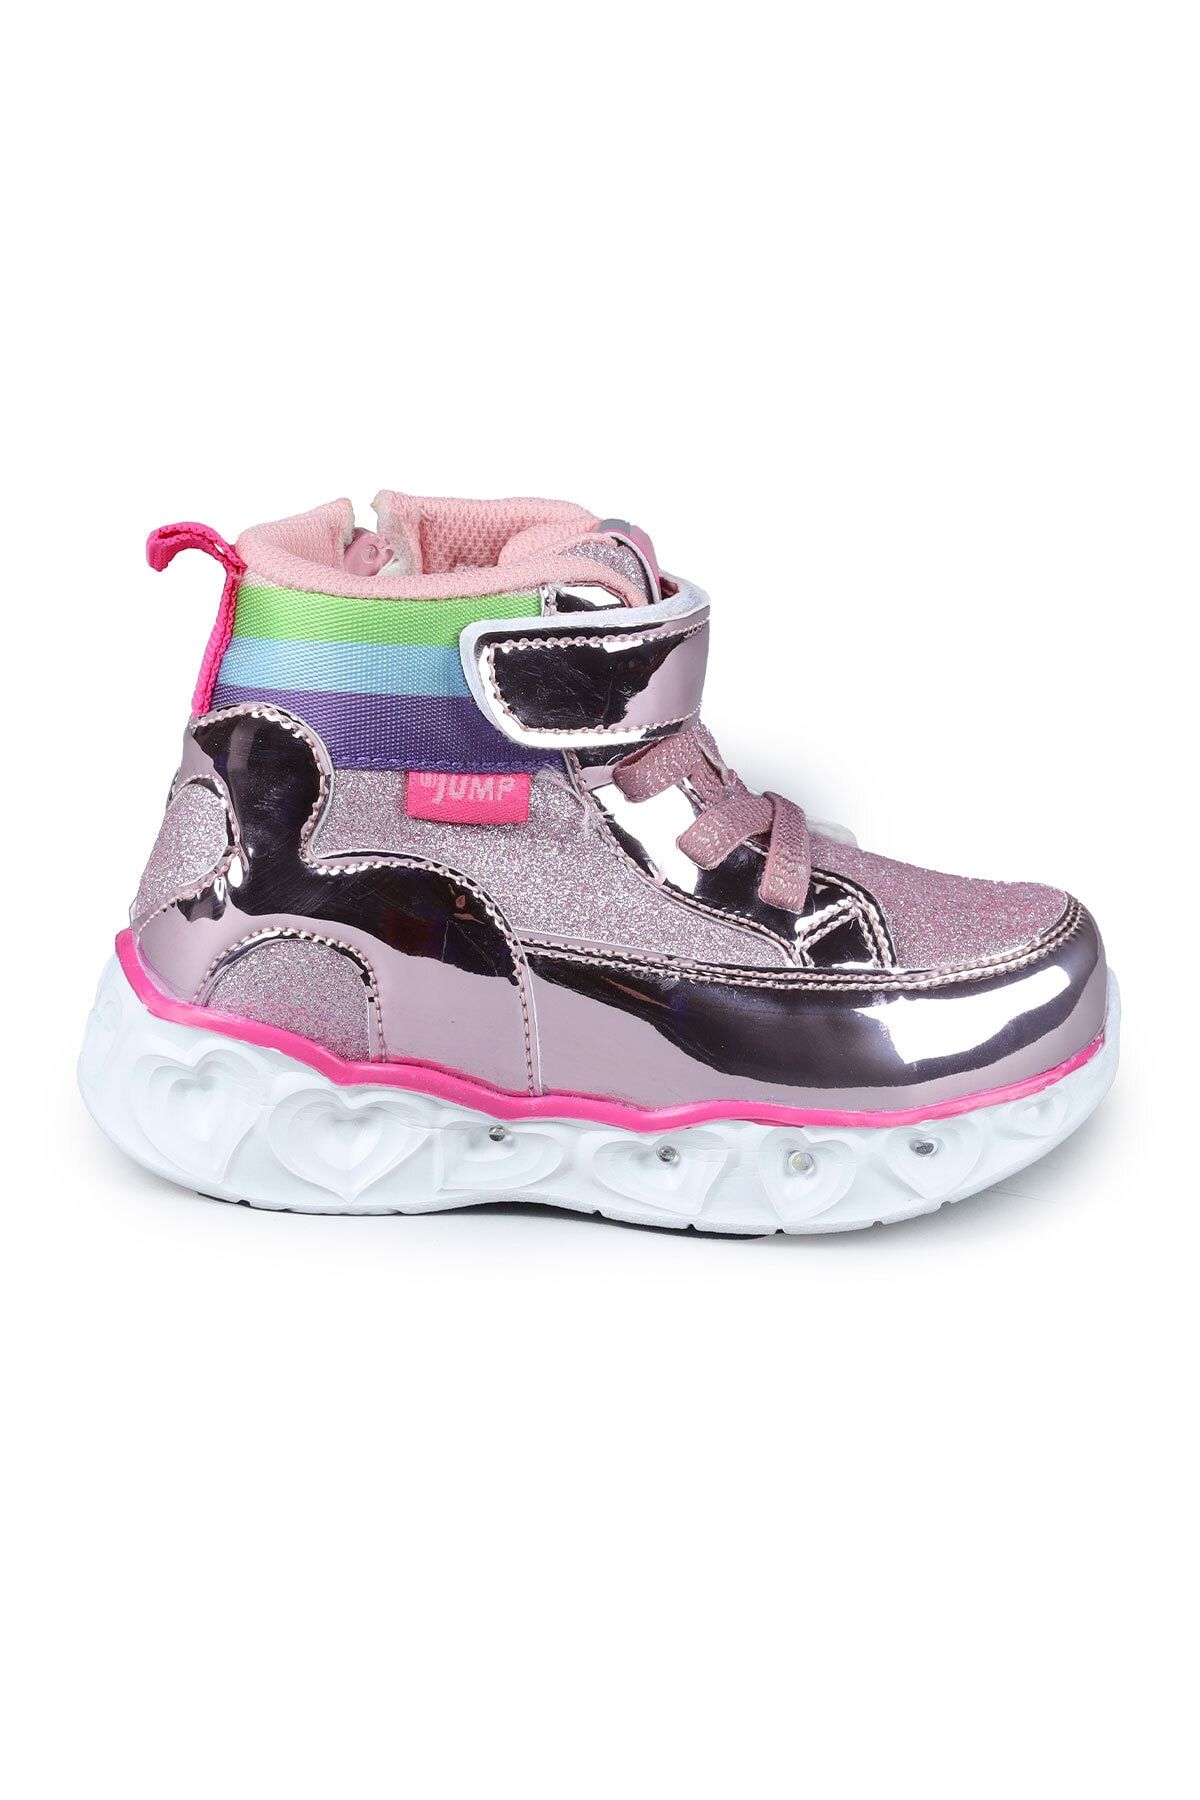 Jump 26962 Pembe - Fuşya Kız Çocuk Sneaker Günlük Spor Ayakkabı